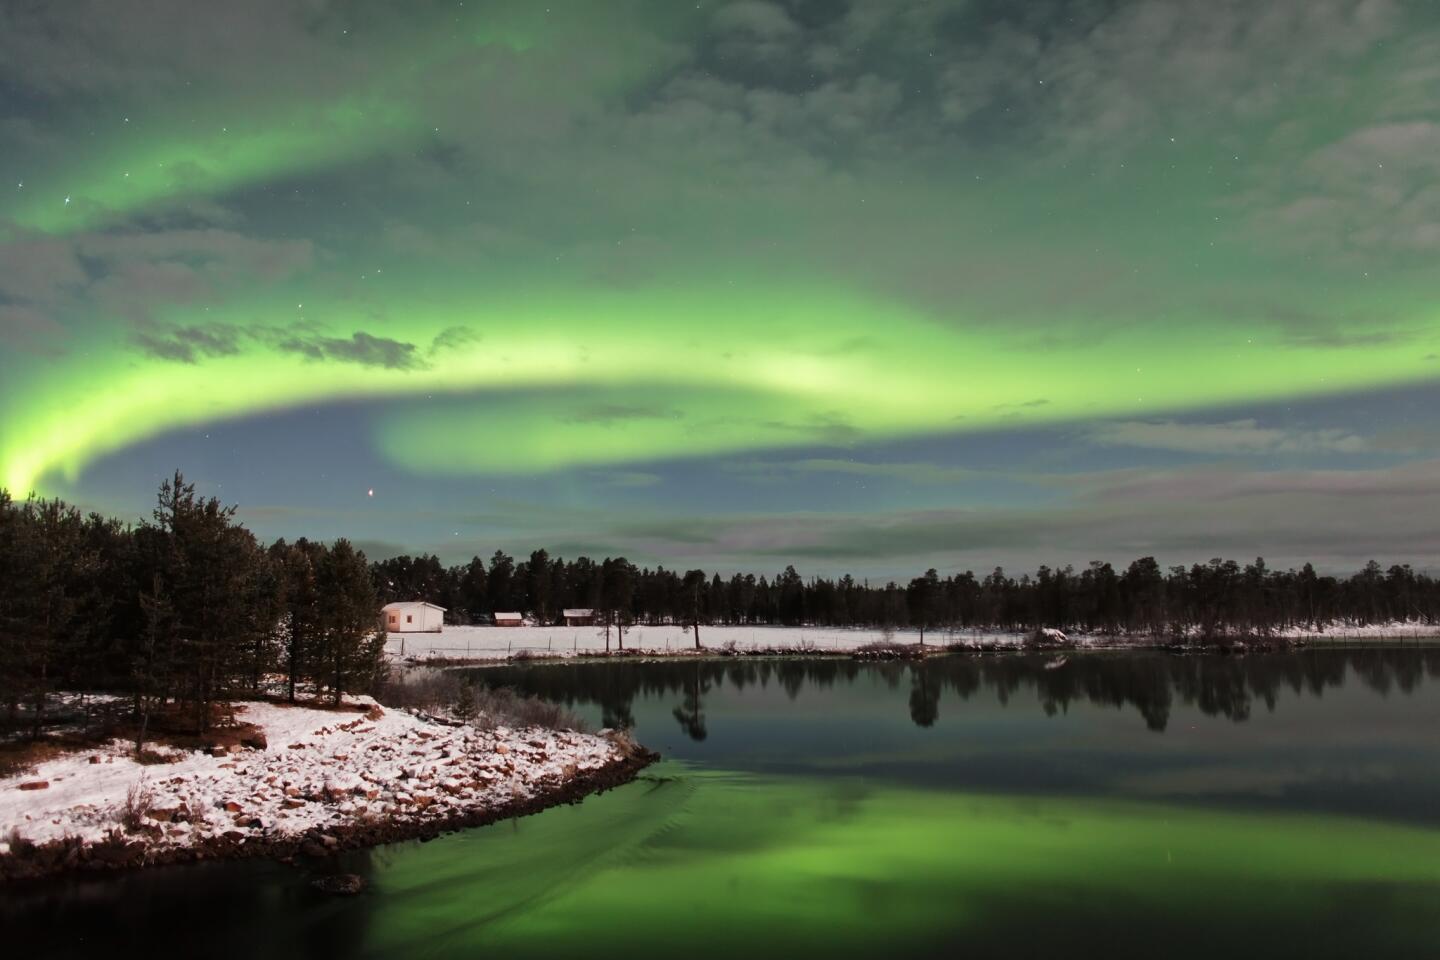 Aurora Borealis (Northern Lights) in Lapland, Finland.